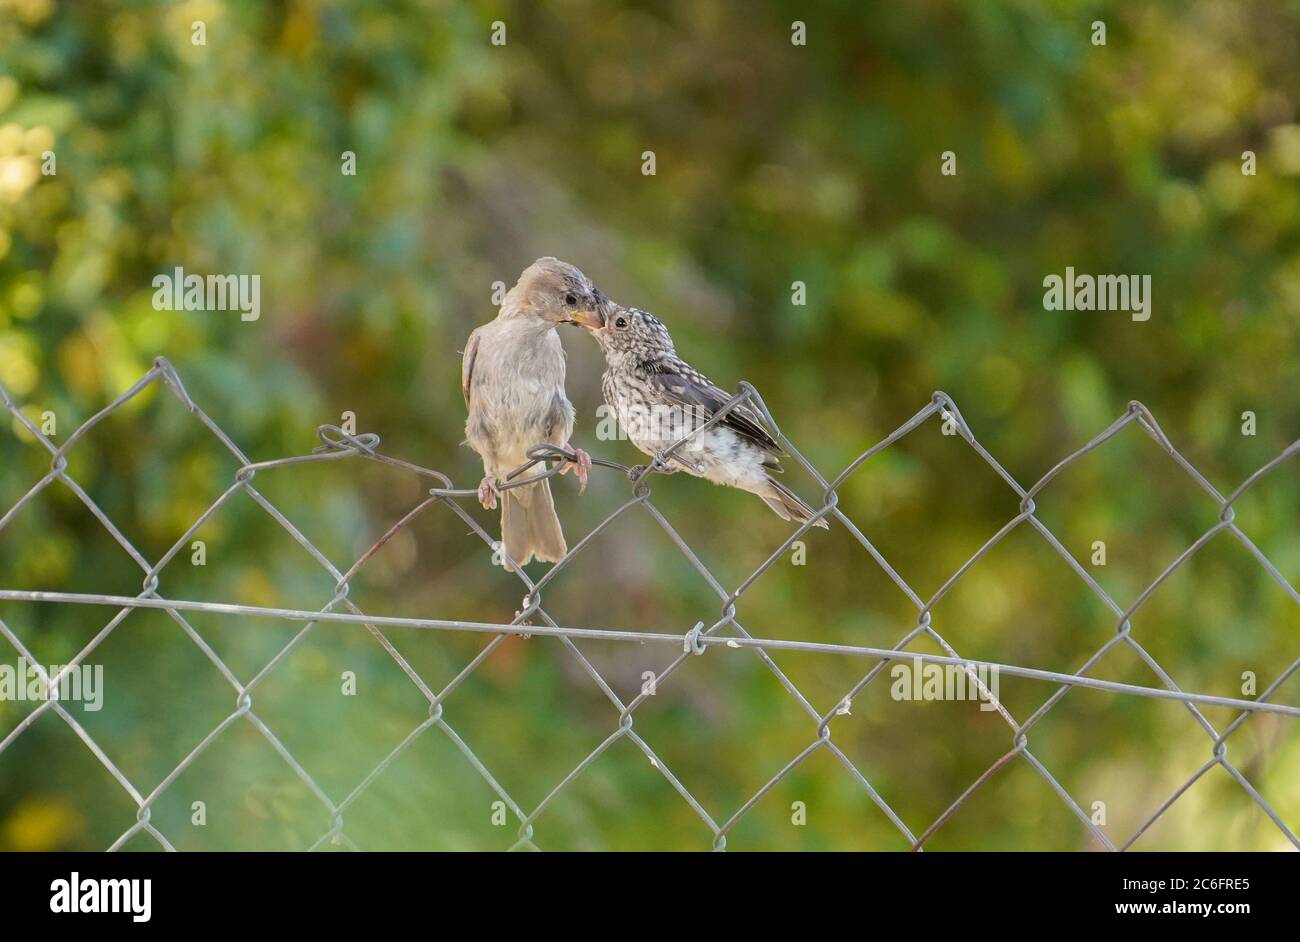 Maison d'éparpilement alimentant un jeune flycatcher tacheté perché sur la clôture. Espagne. Banque D'Images